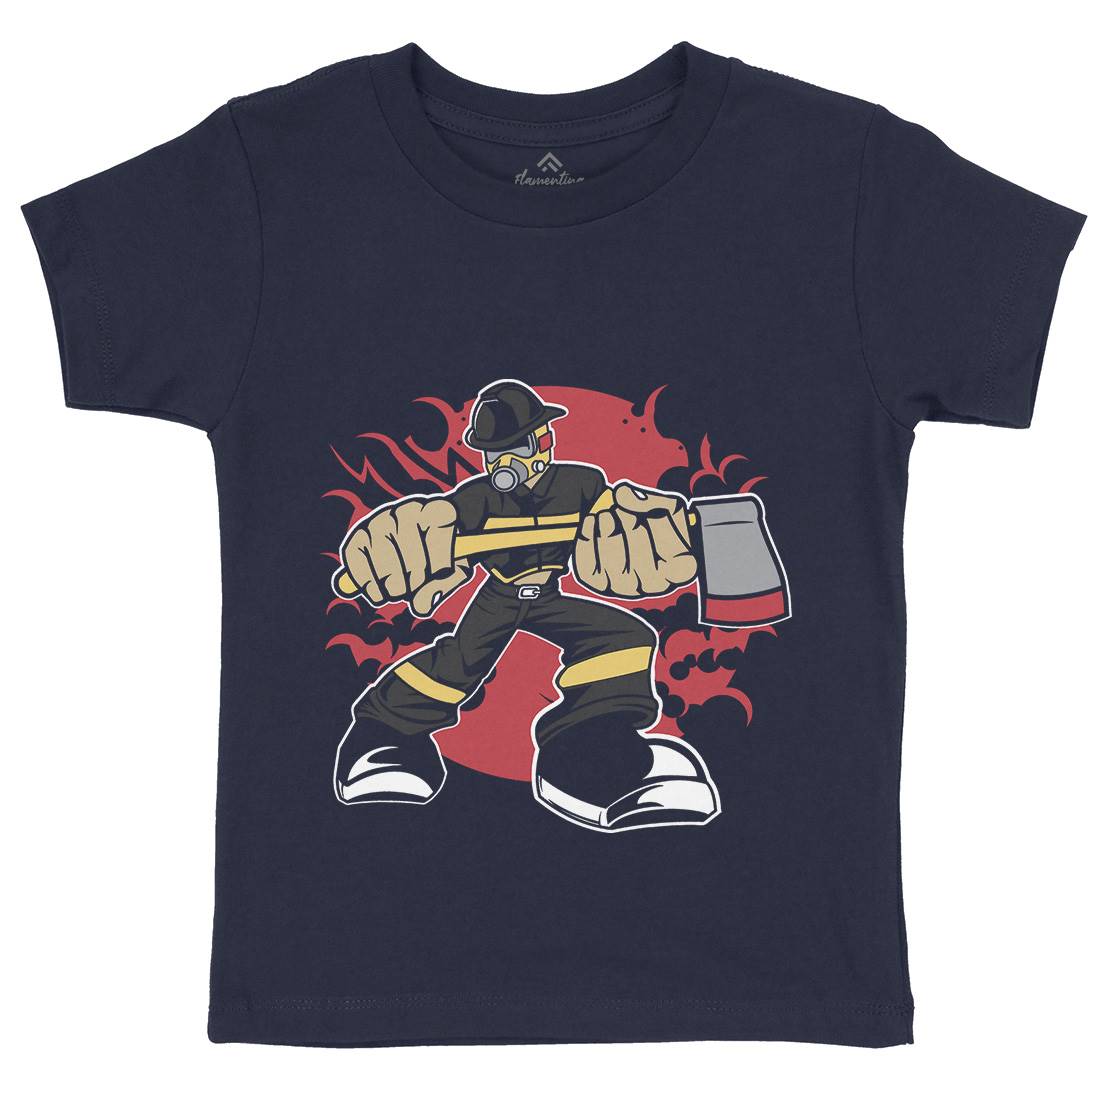 Fireman Kids Organic Crew Neck T-Shirt Firefighters C359